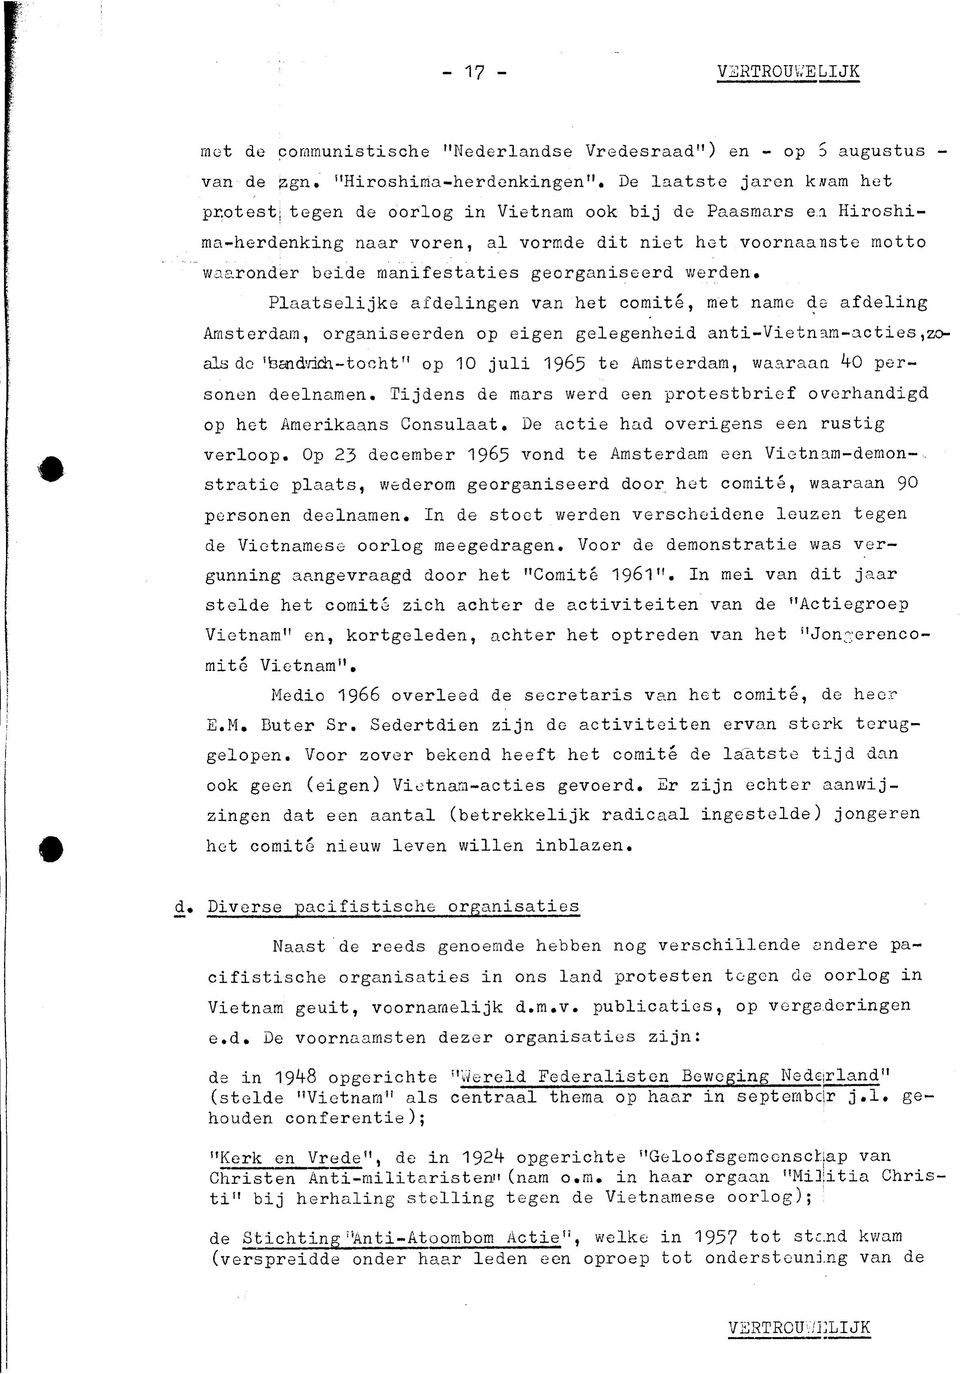 Plaatselijke afdelingen van het comite, met name de afdeling Amsterdam, organiseerden op eigen gelegenheid anti-vietnam-acties,zoals dc 'haidvida-tocht" op 10 juli 1965 te Amsterdam, waaraan ko